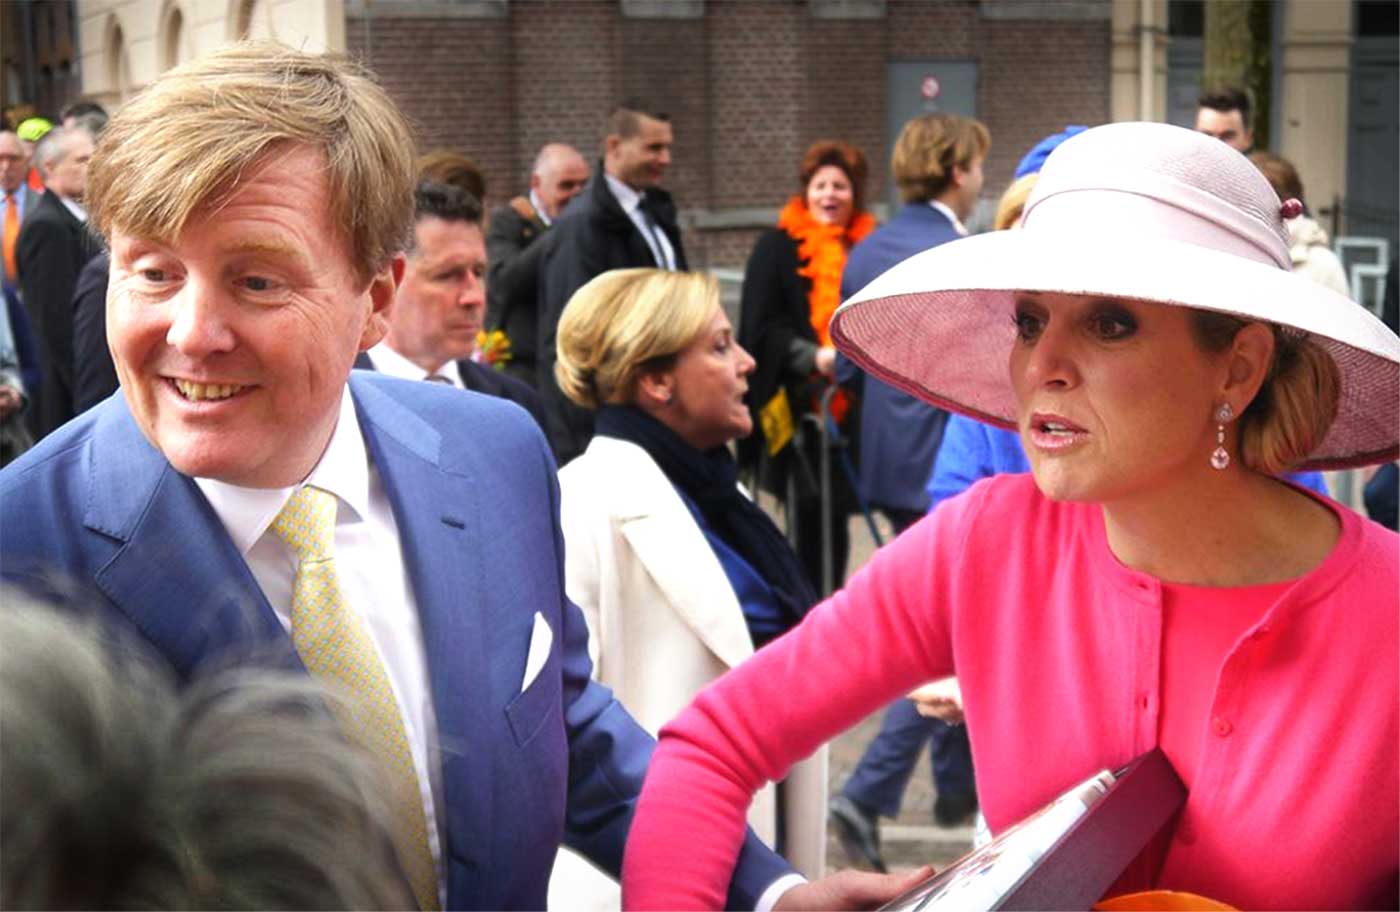 Koninklijke familie bewaart 'warme gevoelens' aan bezoek in Zwolle